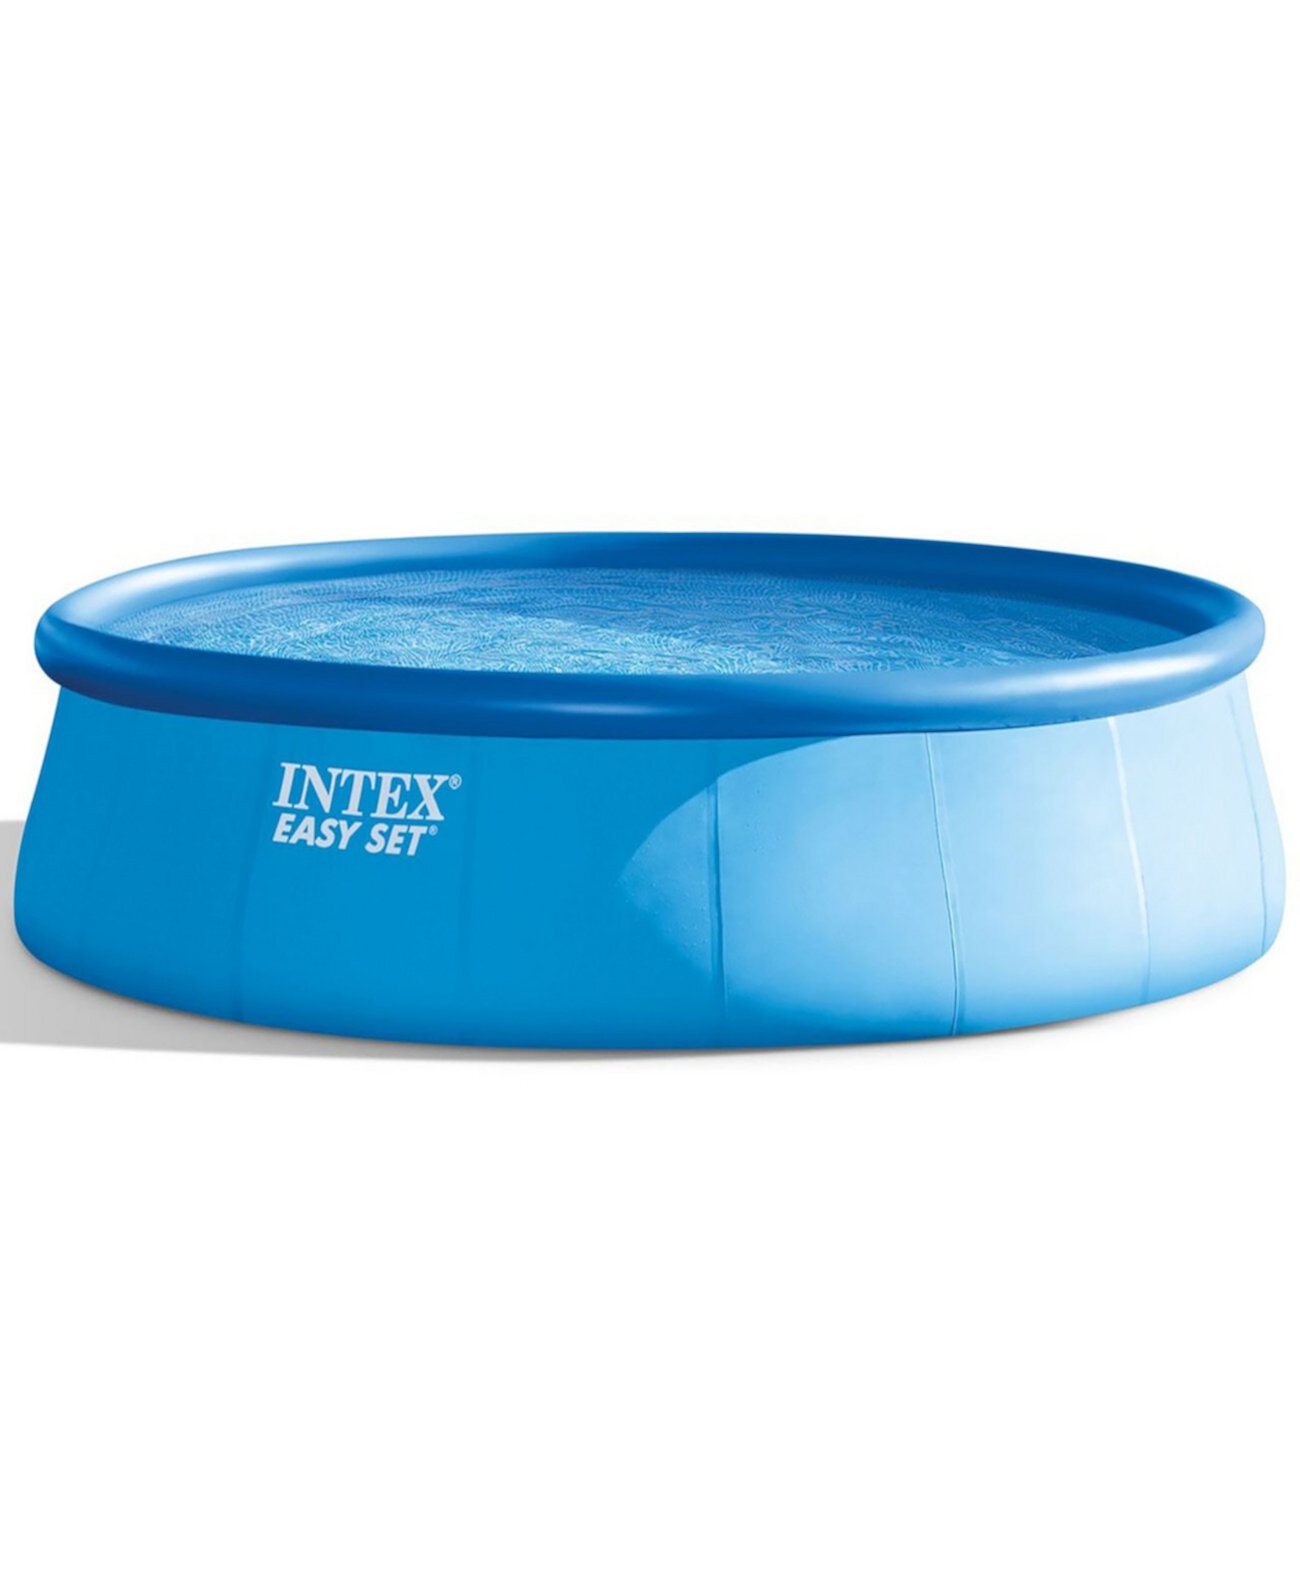 Надувной бассейн Easy Set размером 18 x 48 дюймов с фильтрующим насосом Intex